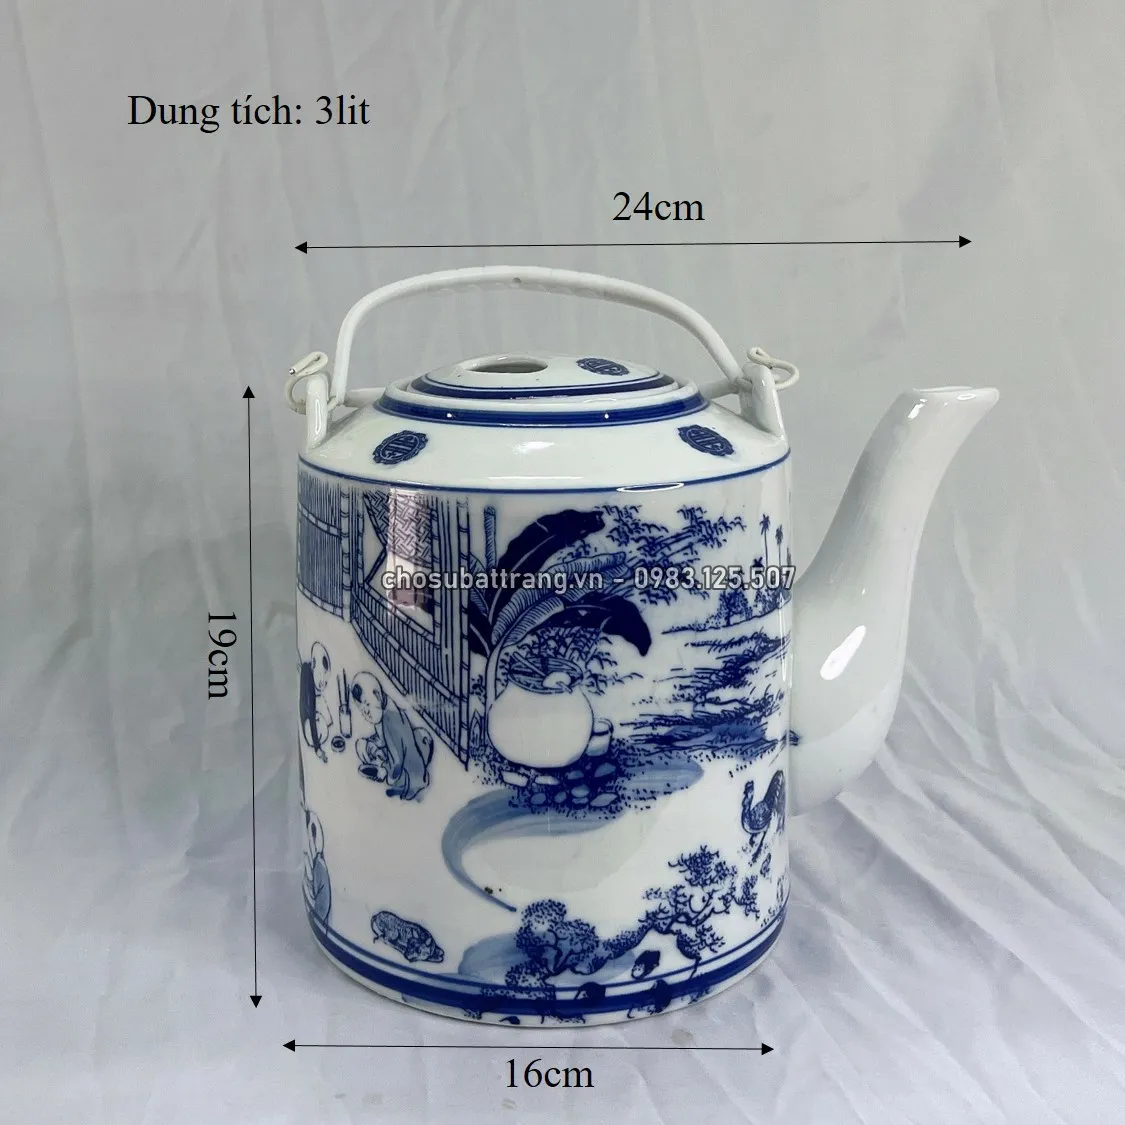 Ấm tích pha trà xanh men trắng trong - 3lit - GIAO MẪU NGẪU NHIÊN